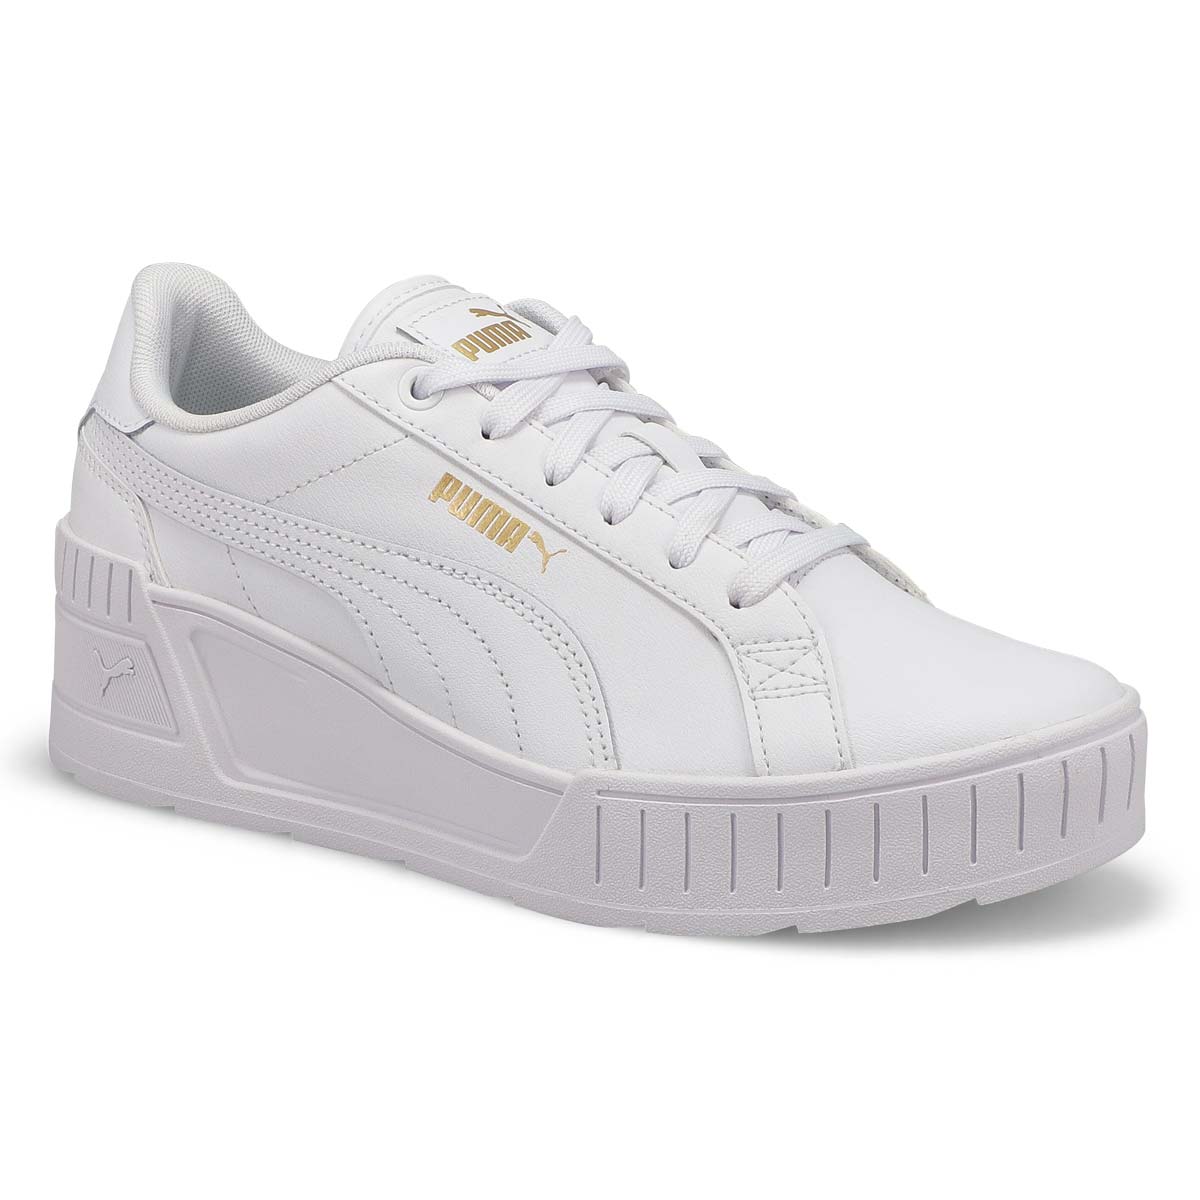 Women's Karmen Wedge Sneaker - White/White